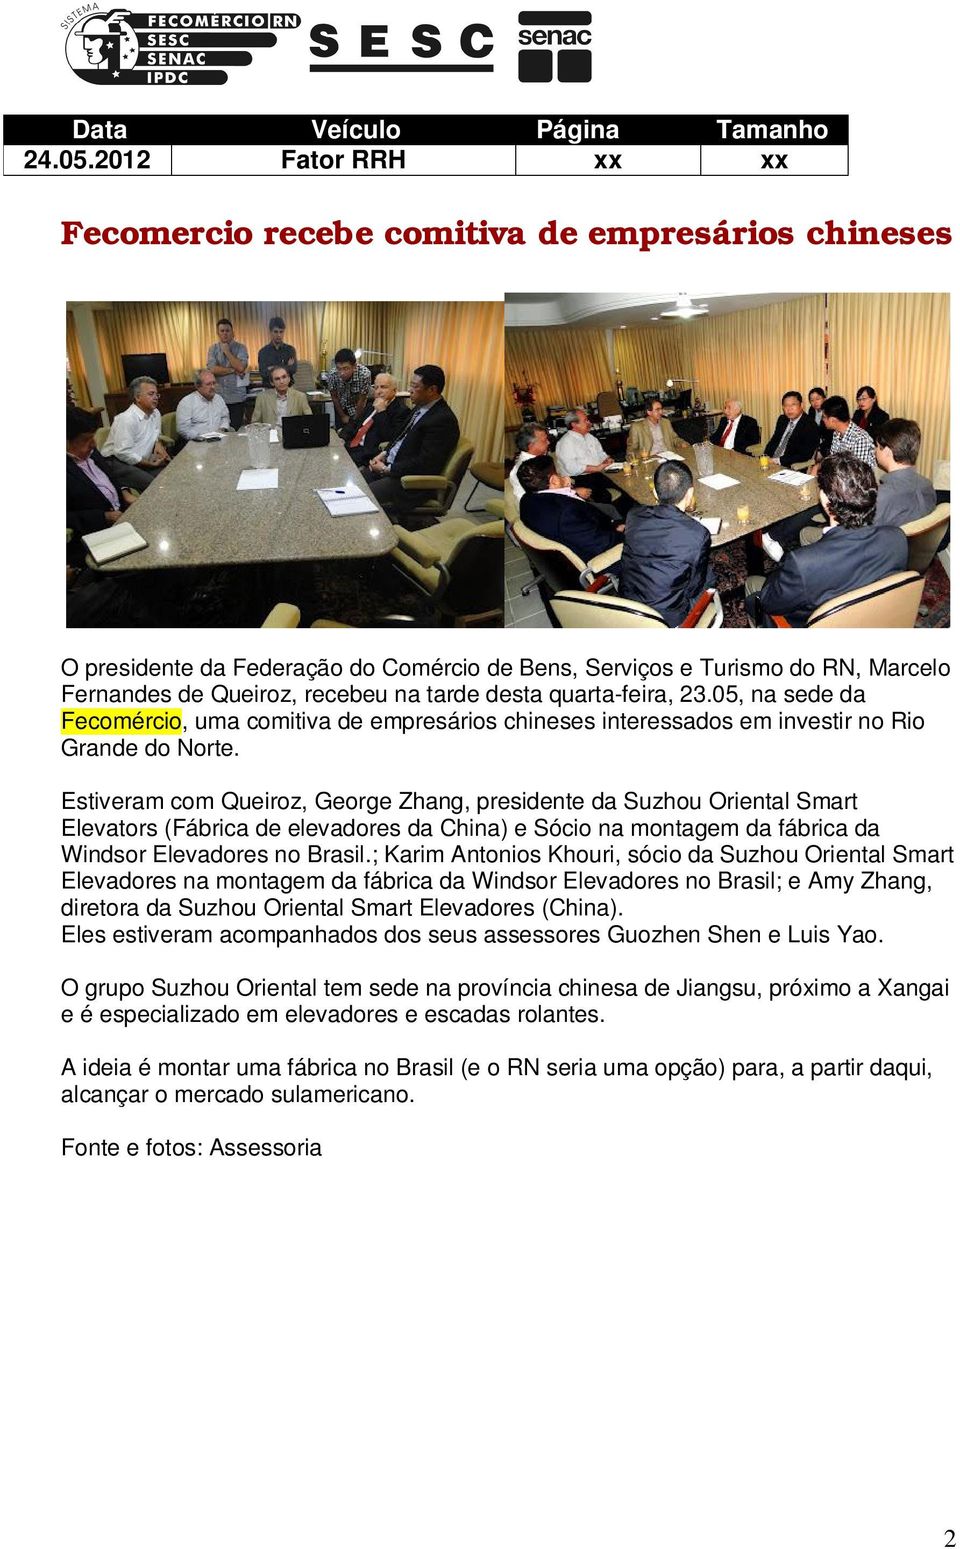 quarta-feira, 23.05, na sede da Fecomércio, uma comitiva de empresários chineses interessados em investir no Rio Grande do Norte.